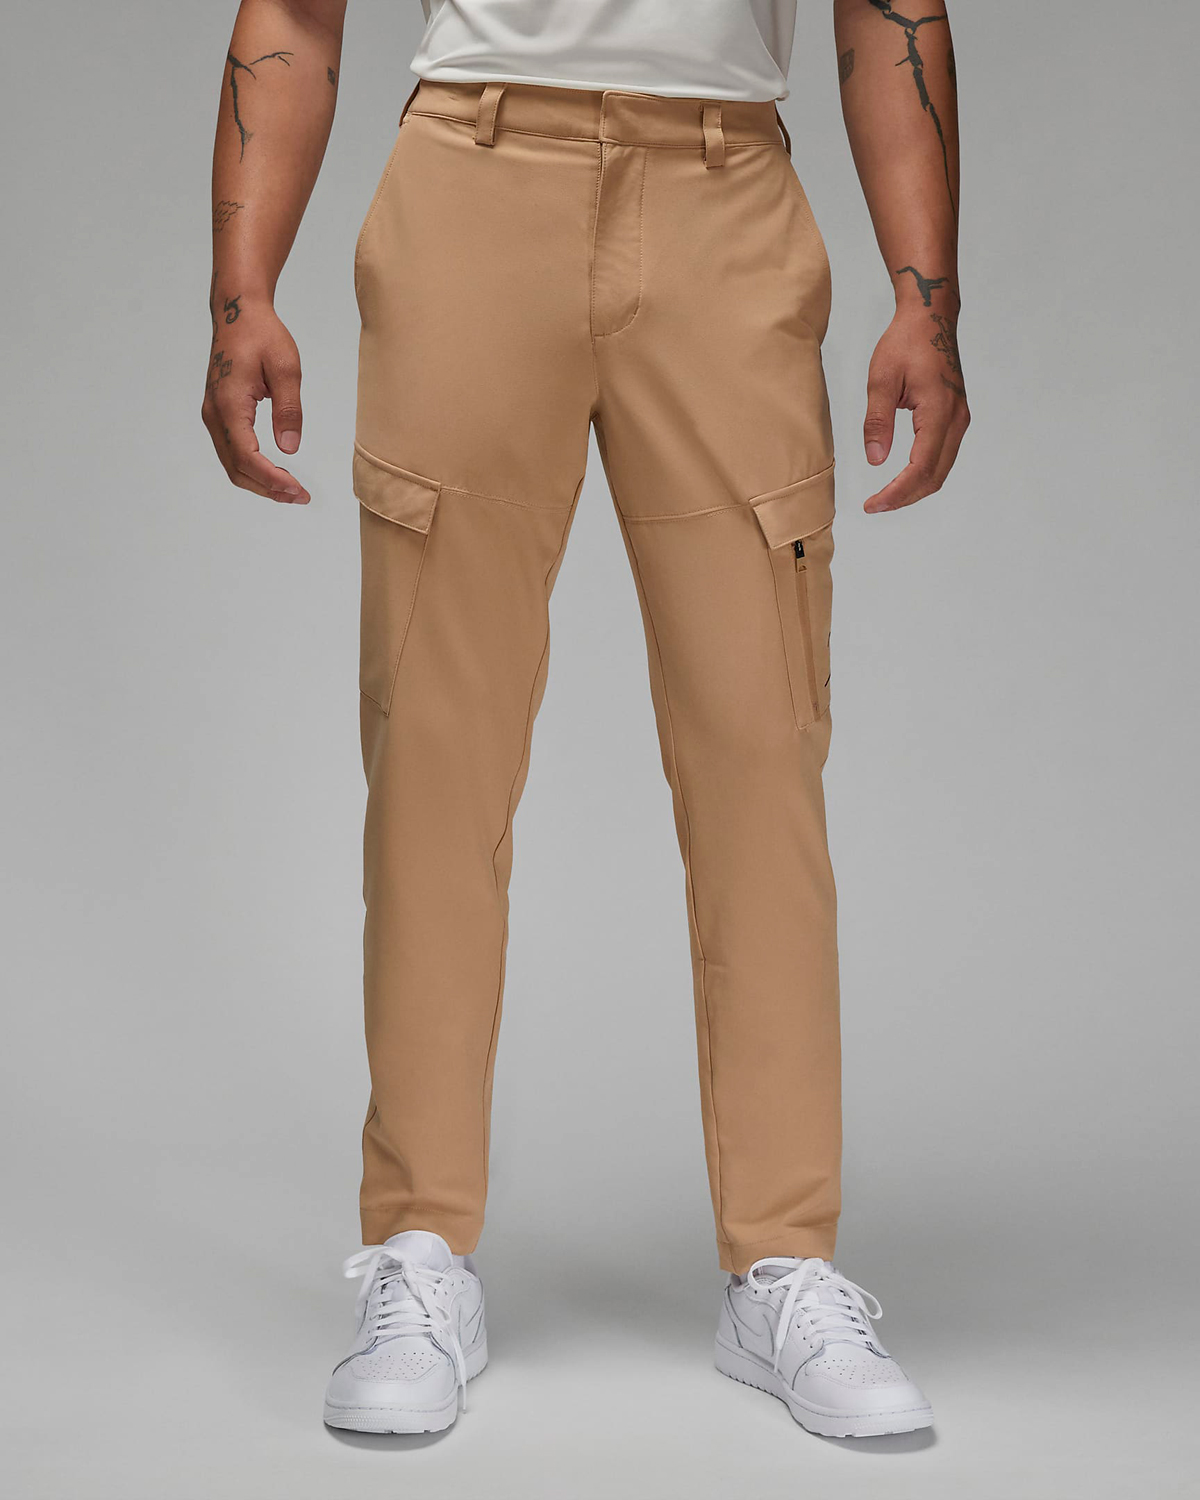 Jordan-Golf-Pants-Hemp-1